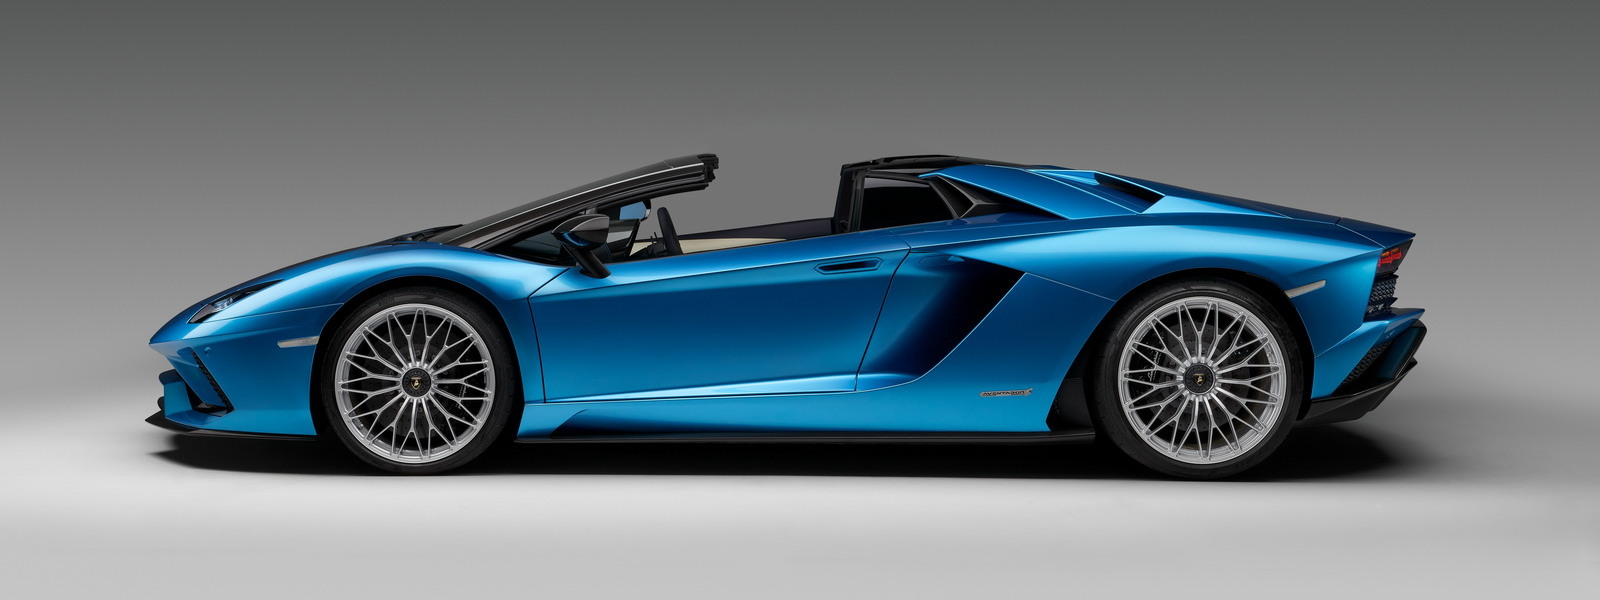 Lamborghini ra mắt Aventador S Roadster, 730 mã lực, 350 km/h, đánh lái cả bốn bánh, giá 373.000 USD